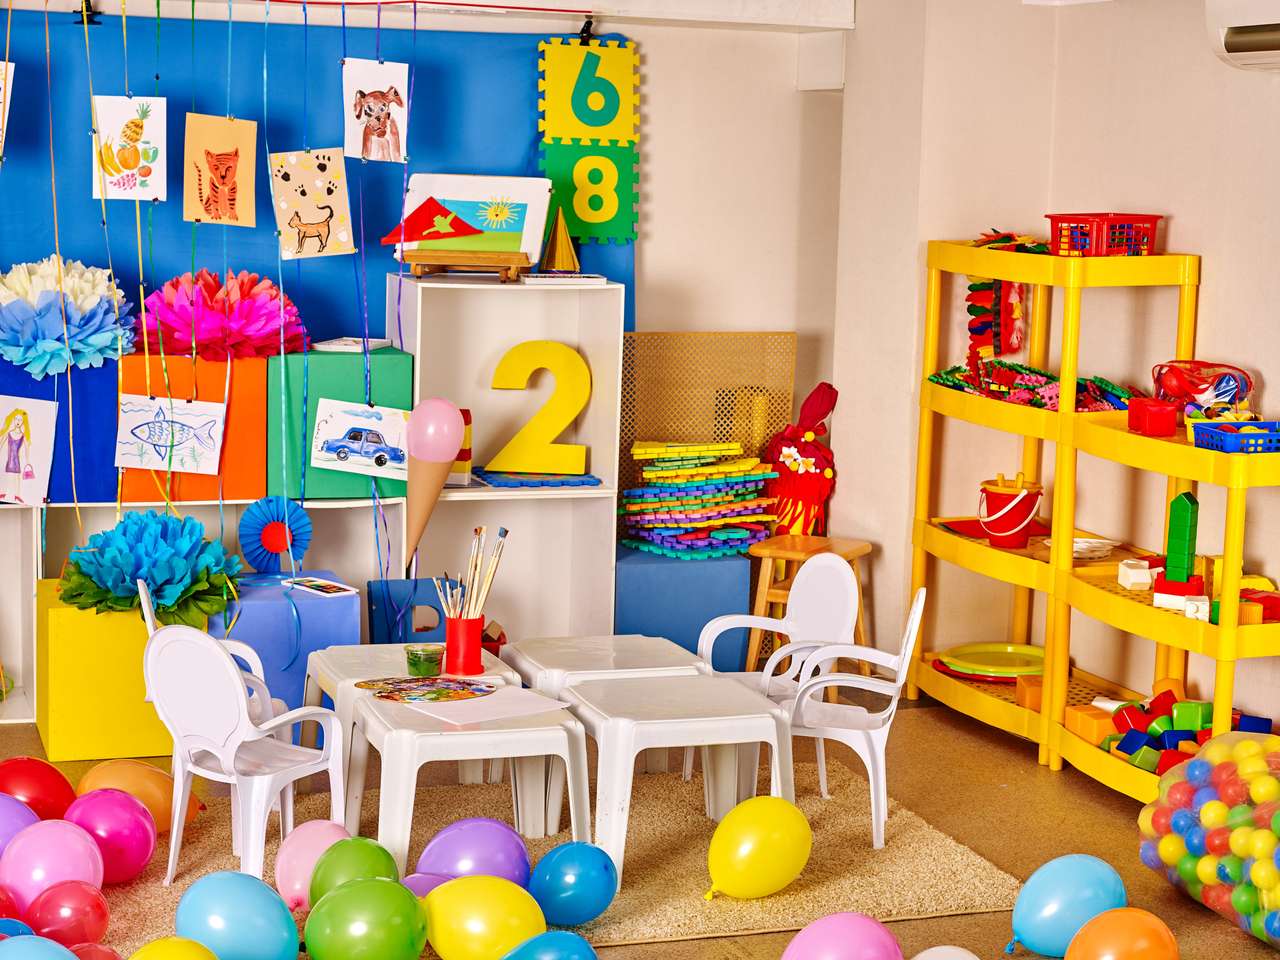 Wnętrze pokoju zabaw dla dzieci z zabawkami w przedszkolu. puzzle online